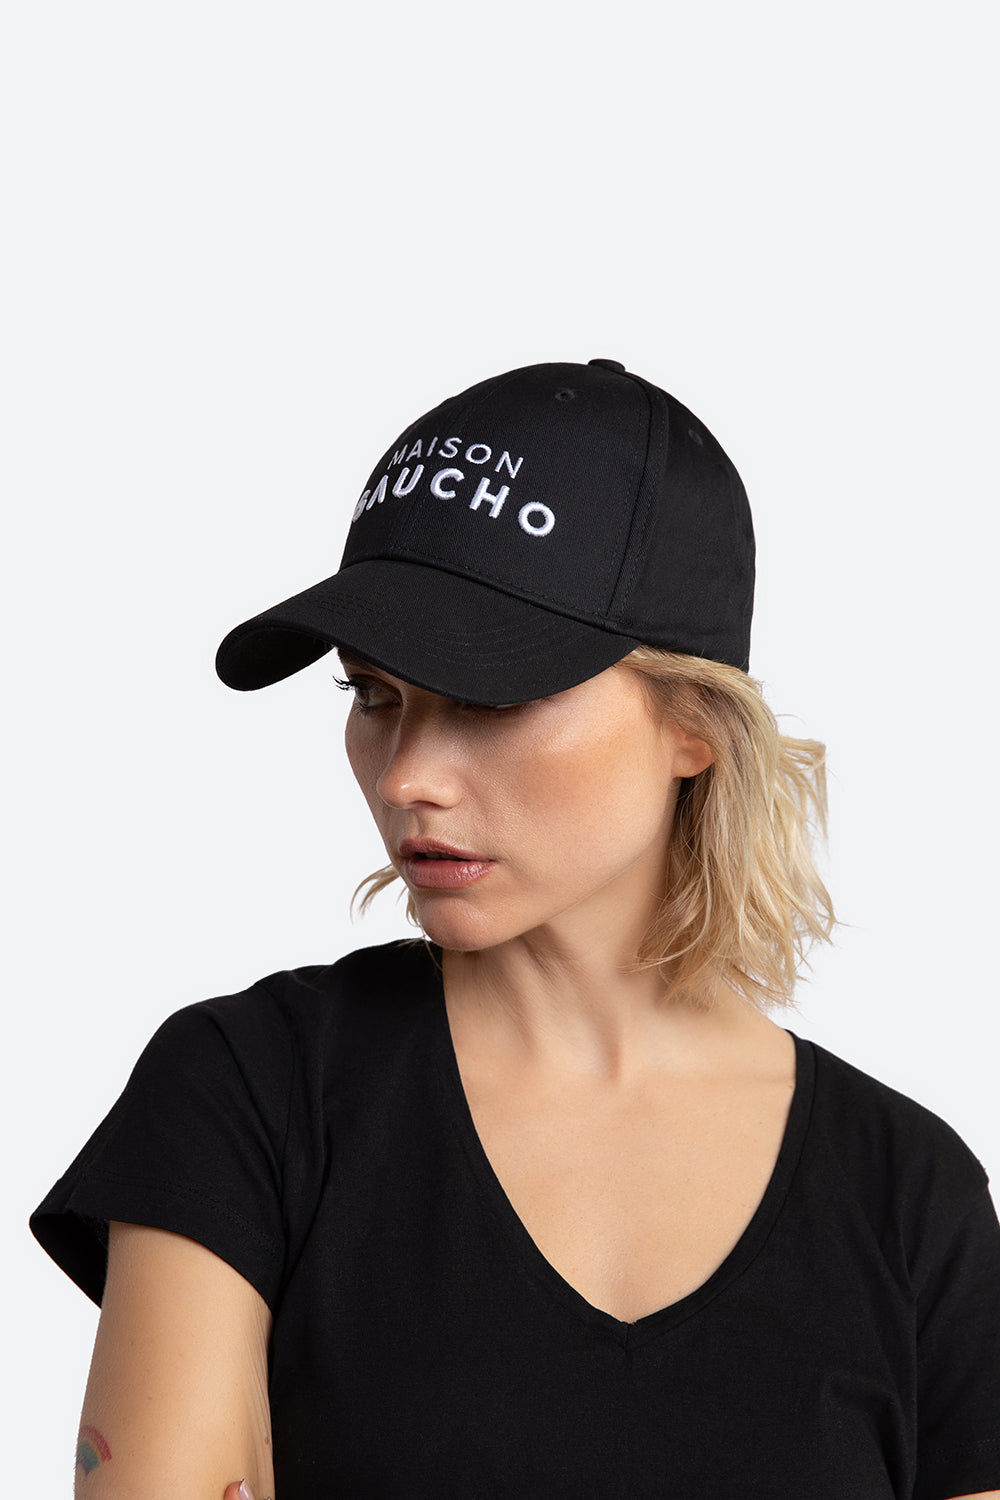 Woman models the Maison Gaucho cap.